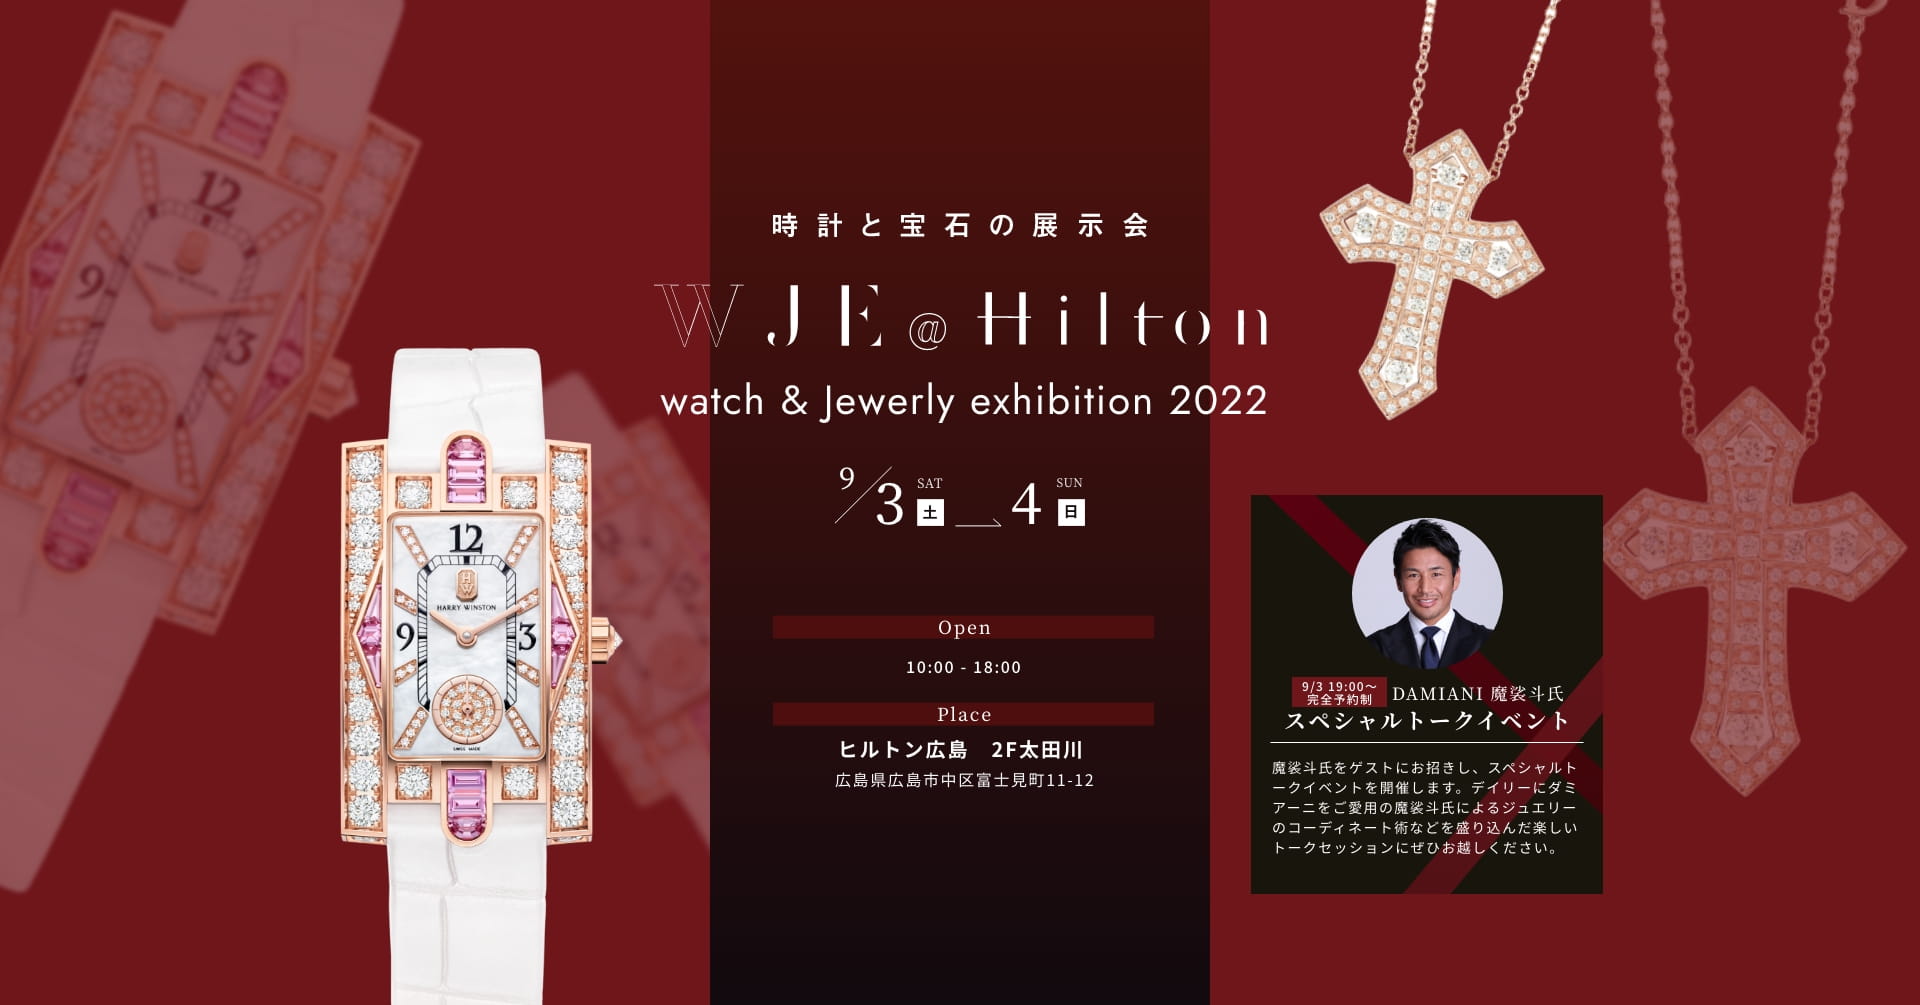 時計と宝石の展示会 WJE@Hilton watch & jewerly exhibition 2022